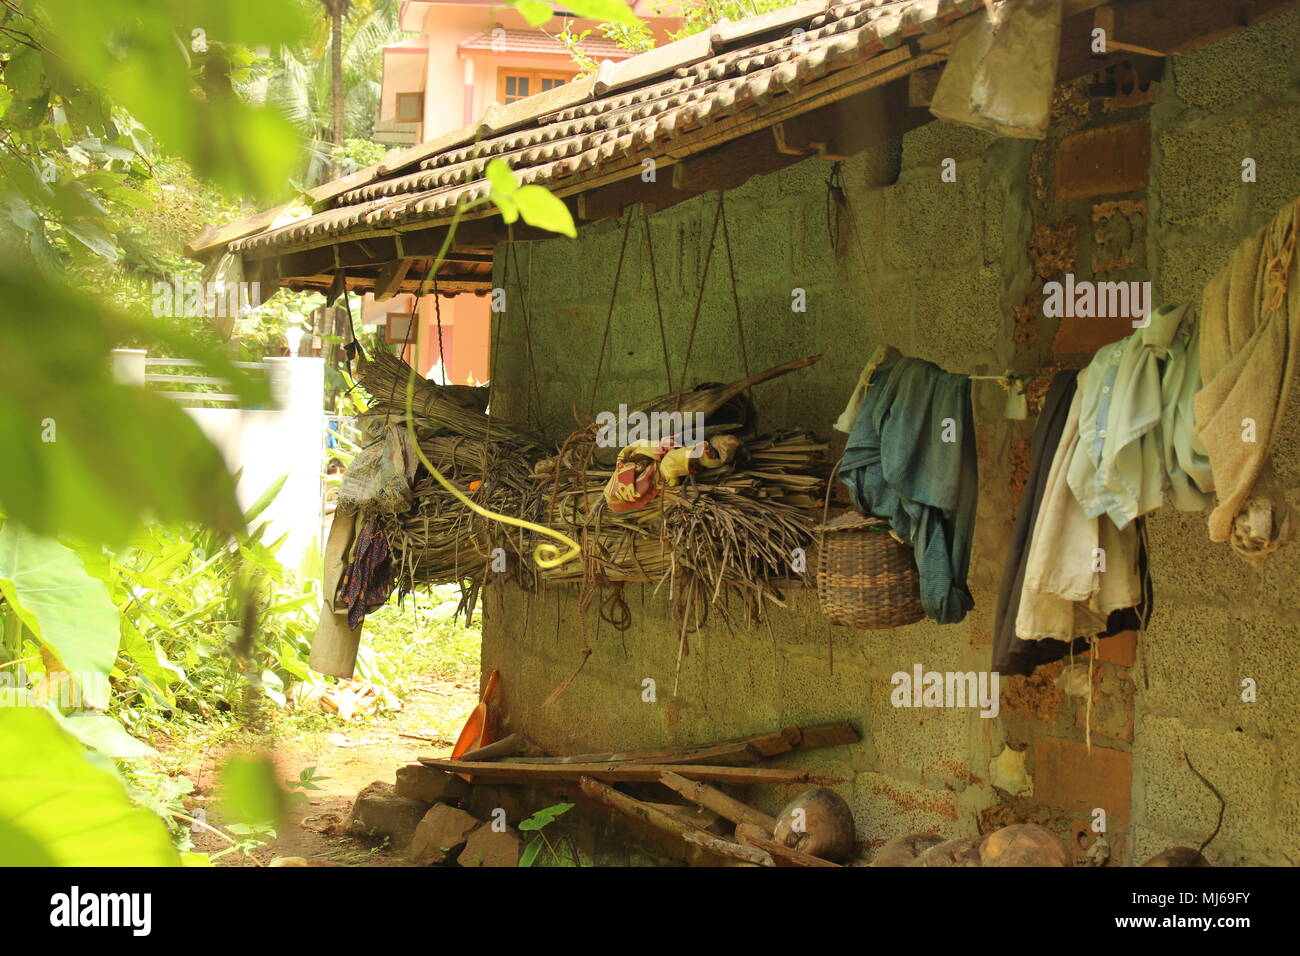 La culture indienne et de la pauvreté avec des vêtements étendus dehors dans une hutte Banque D'Images